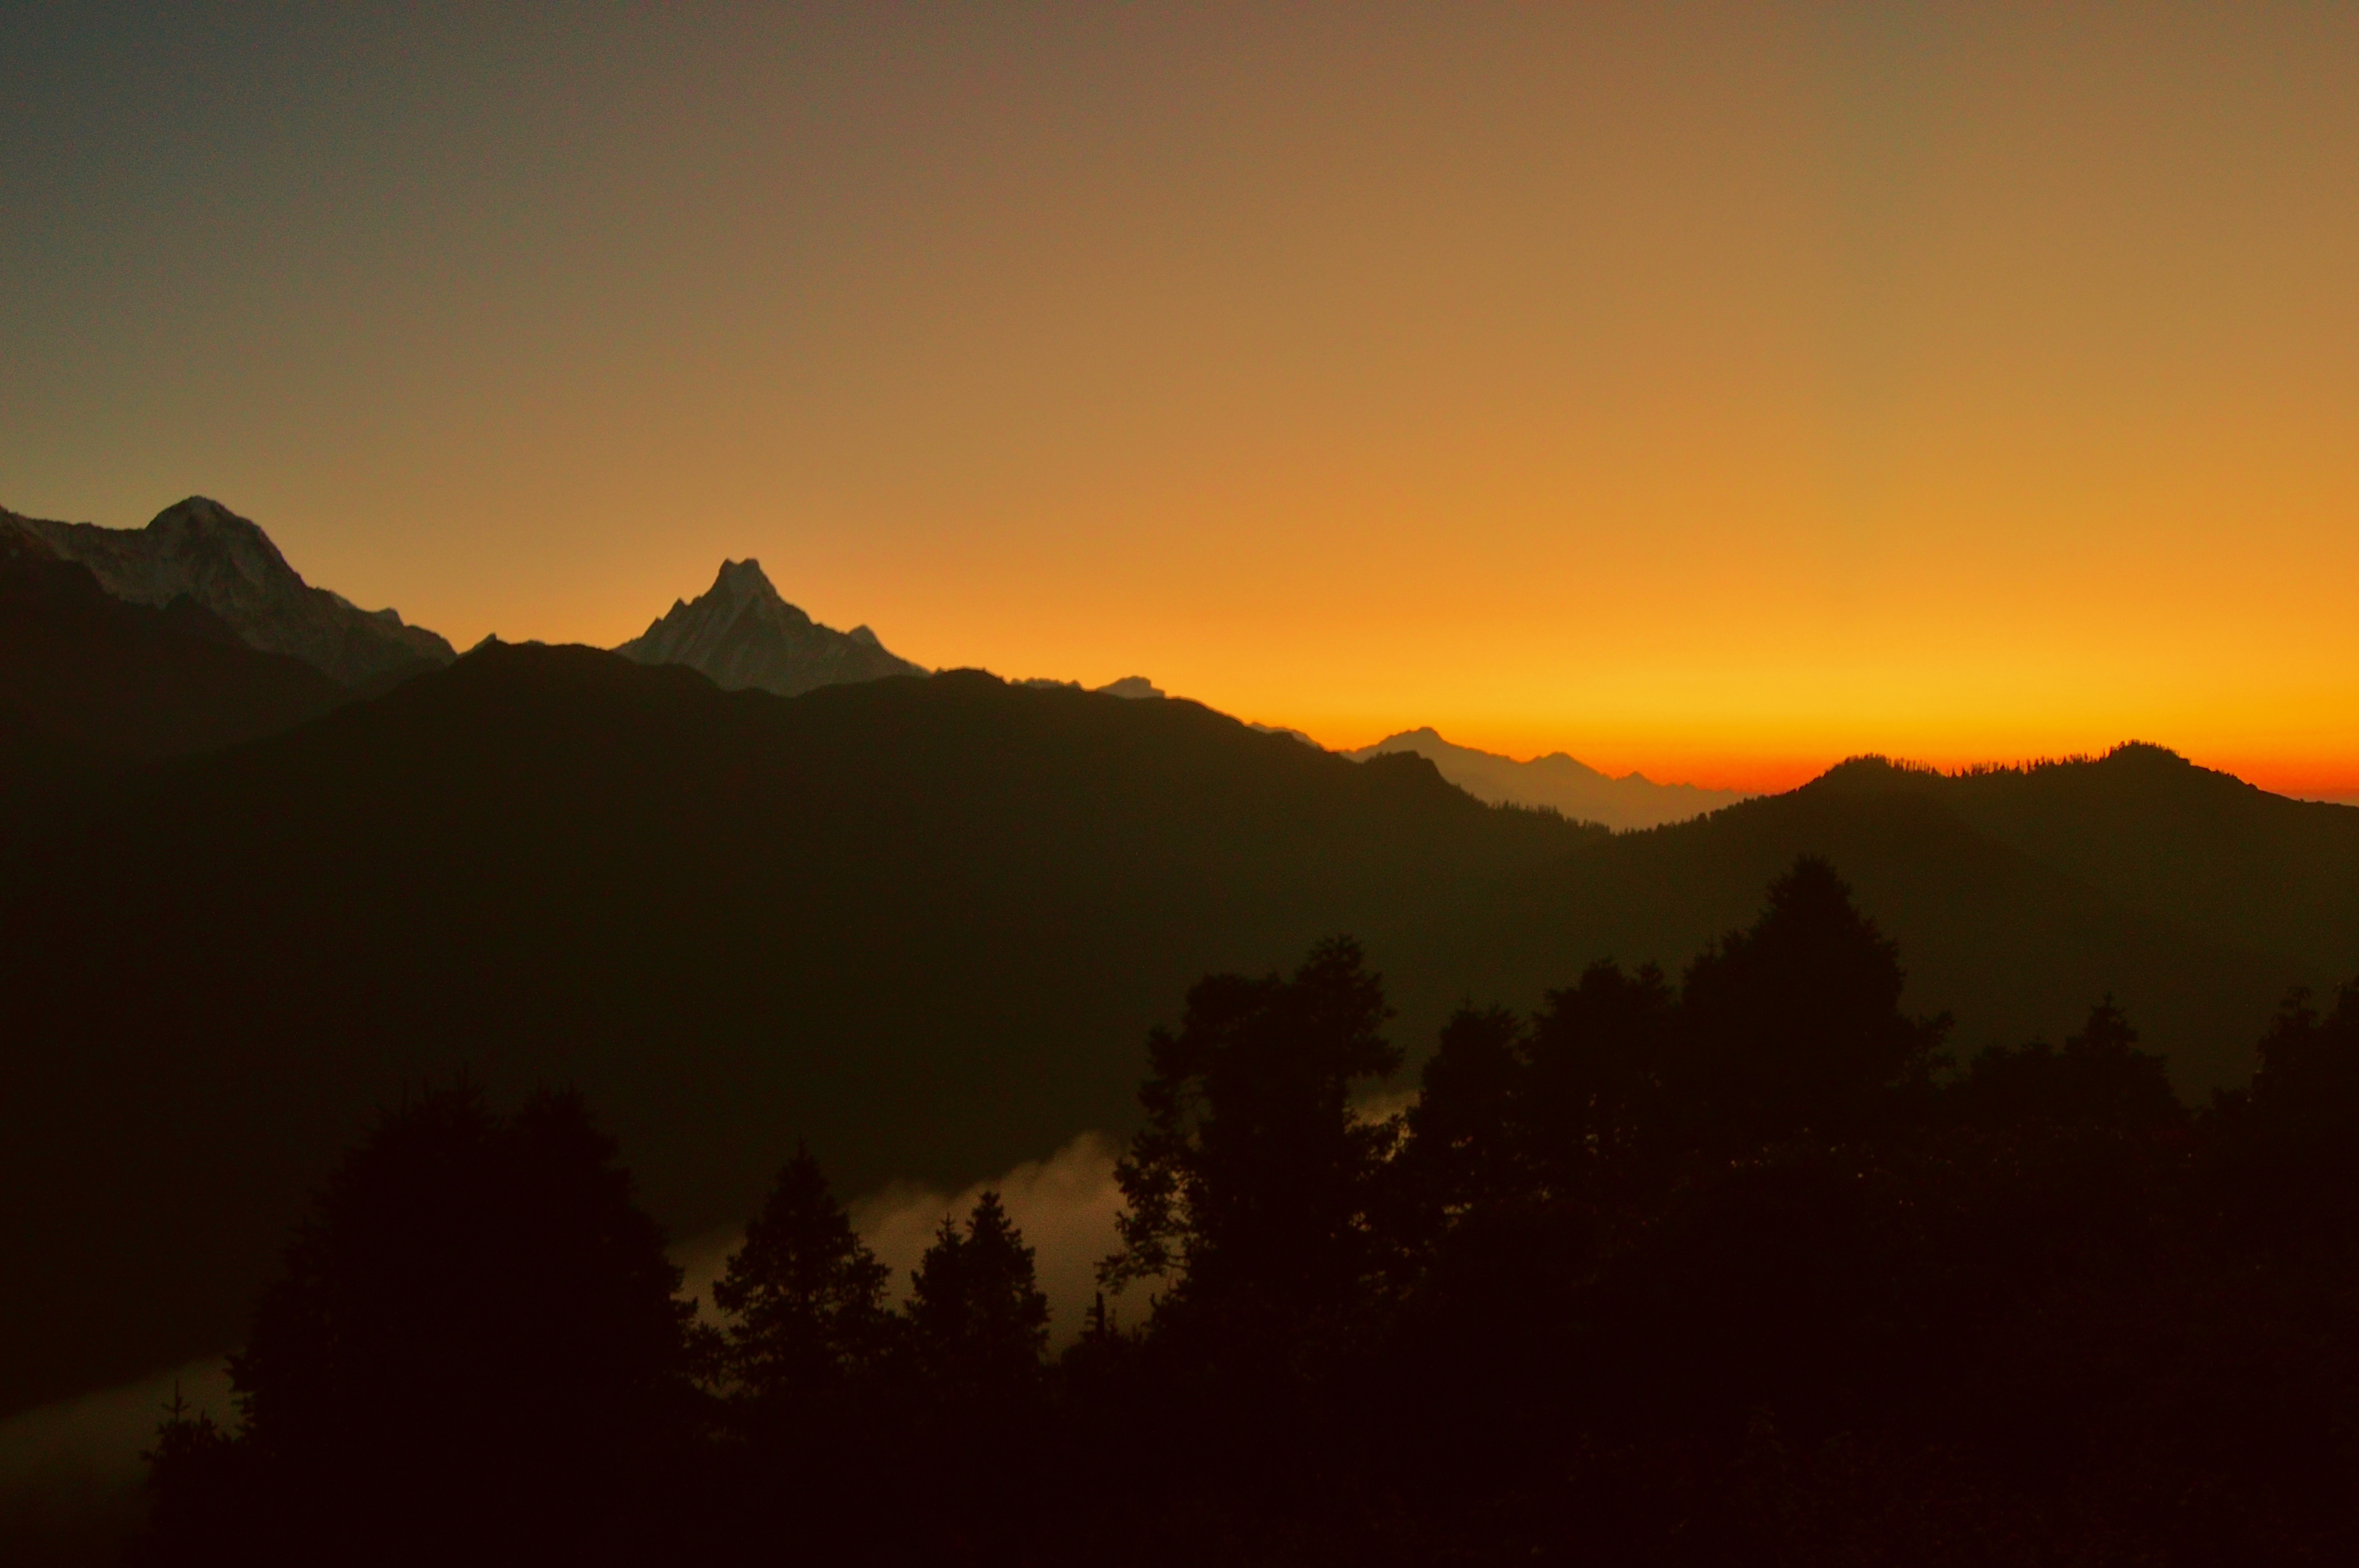 Peaks of the Annapurna Treks: A Photo Gallery